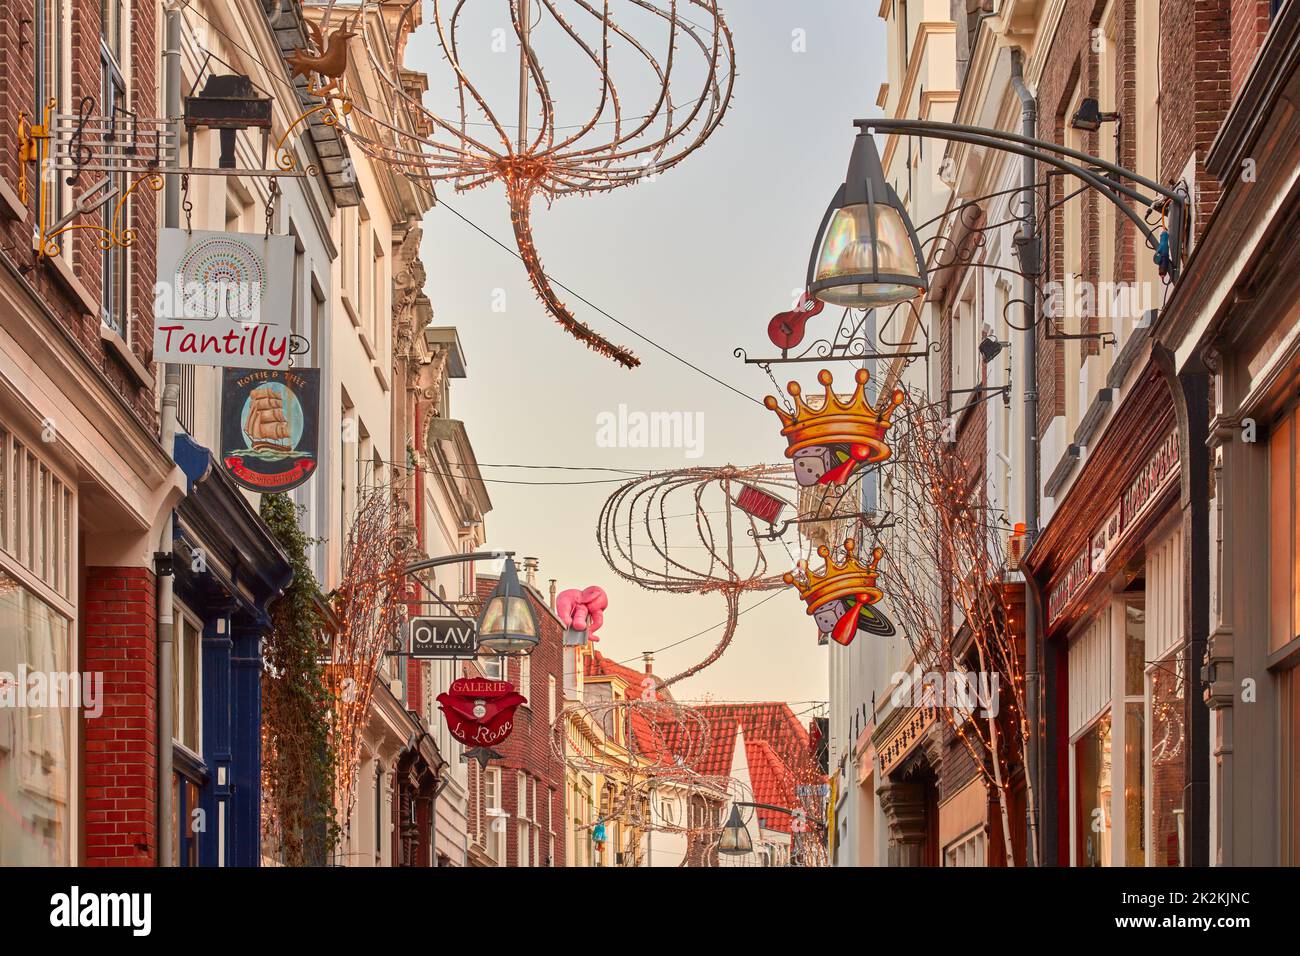 Deventer, pays-Bas - 20 décembre 2021: Rue commerçante avec décoration de noël dans le centre-ville hollandais de Deventer, pays-Bas Banque D'Images